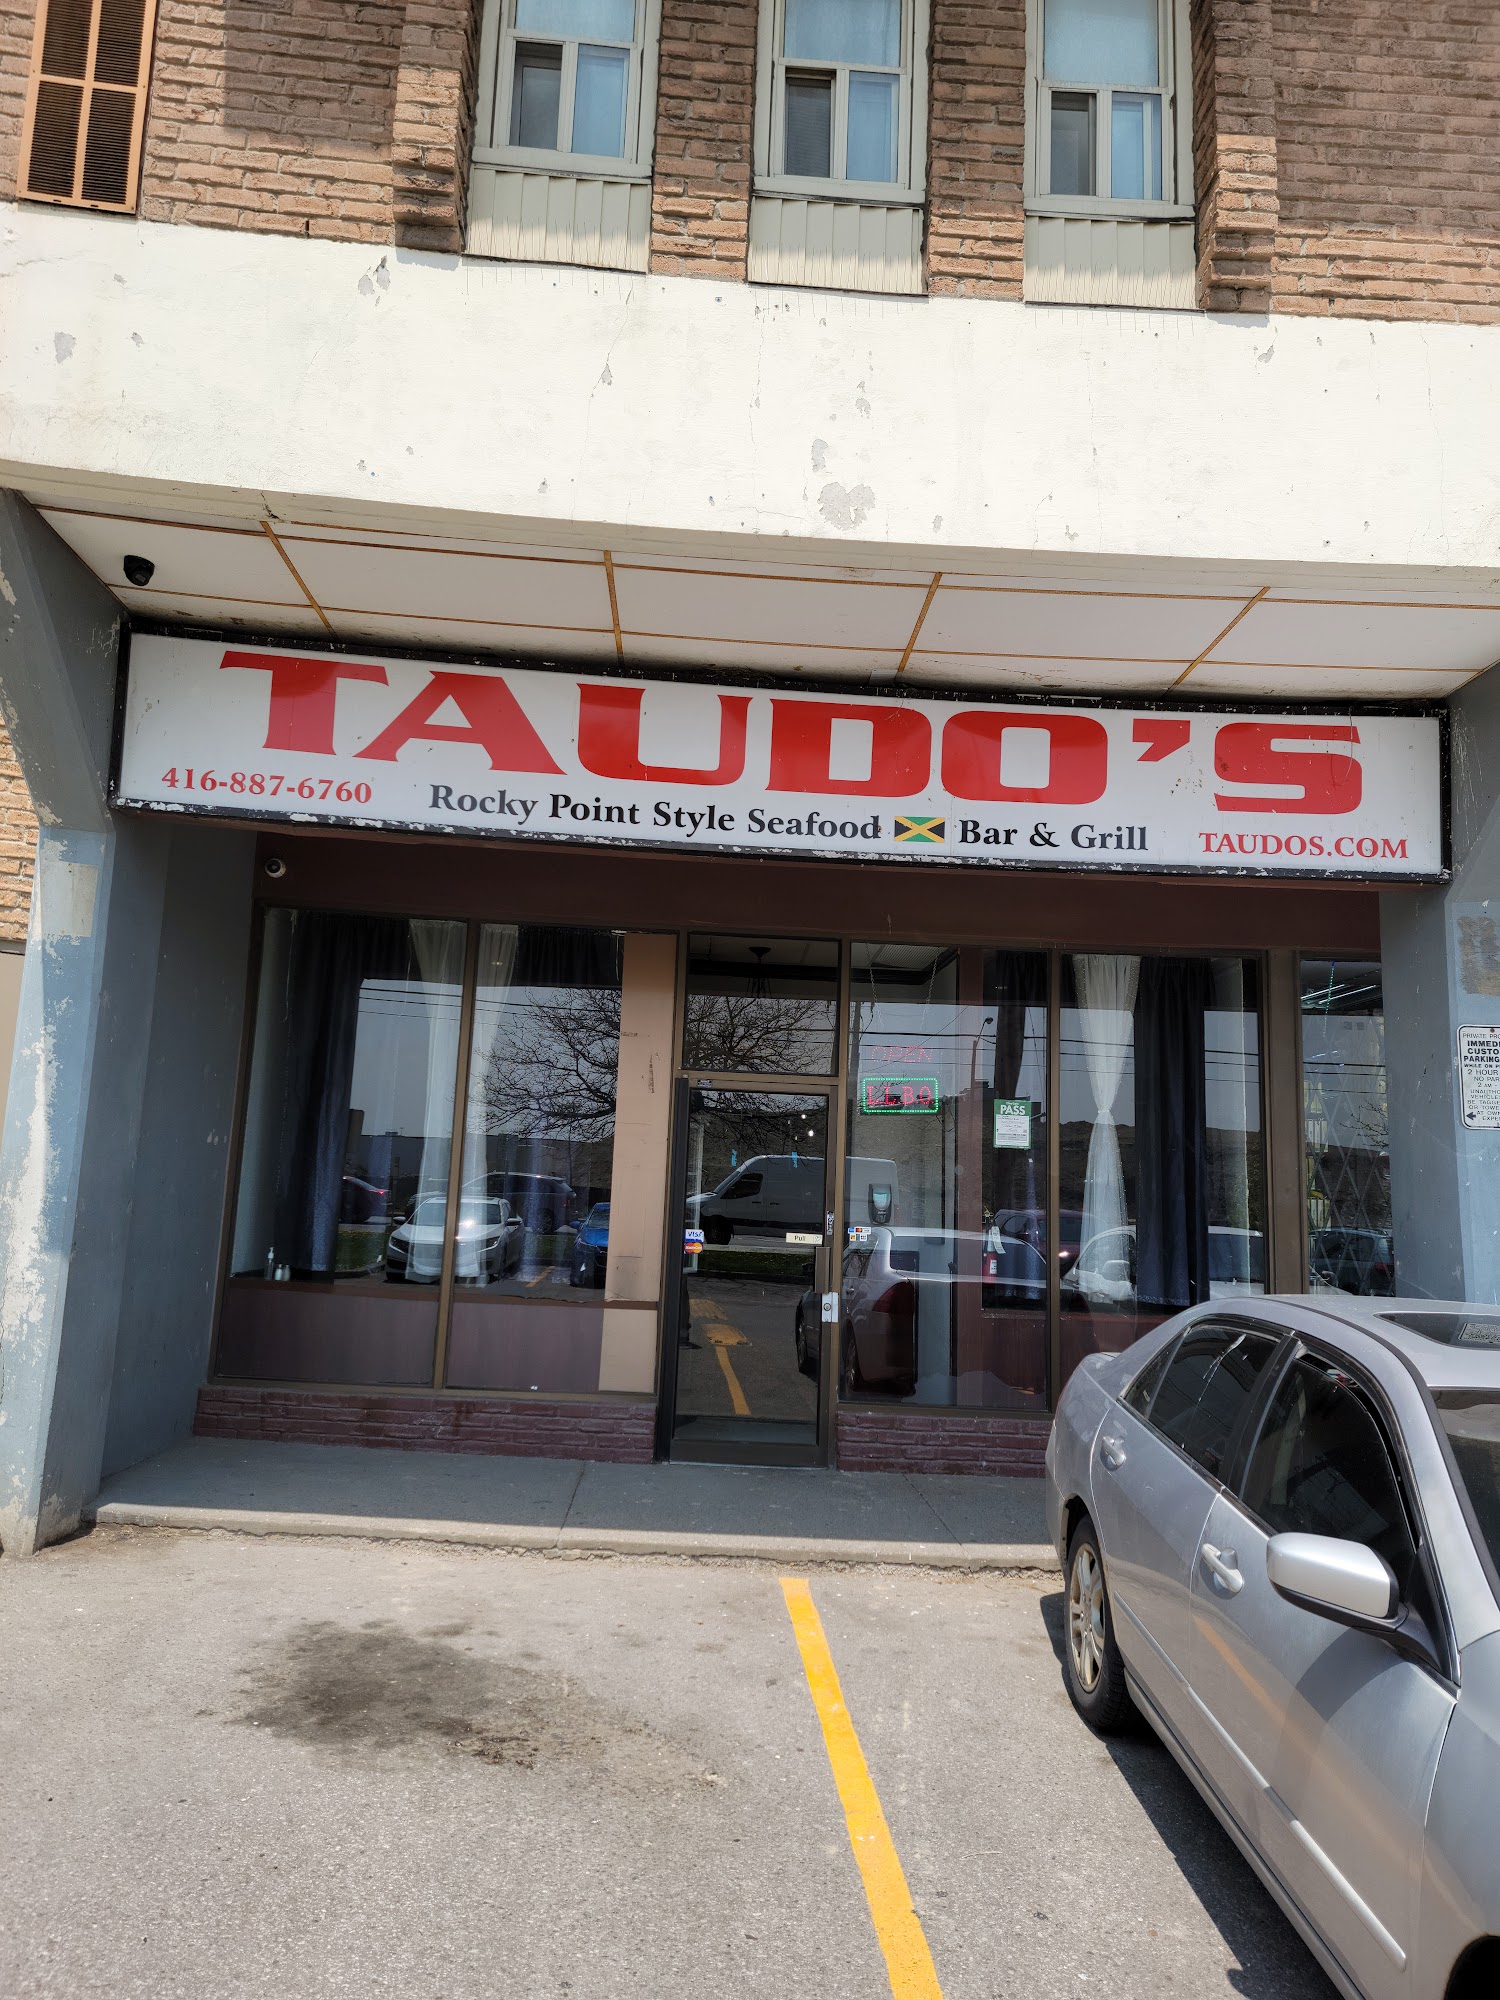 Taudo's